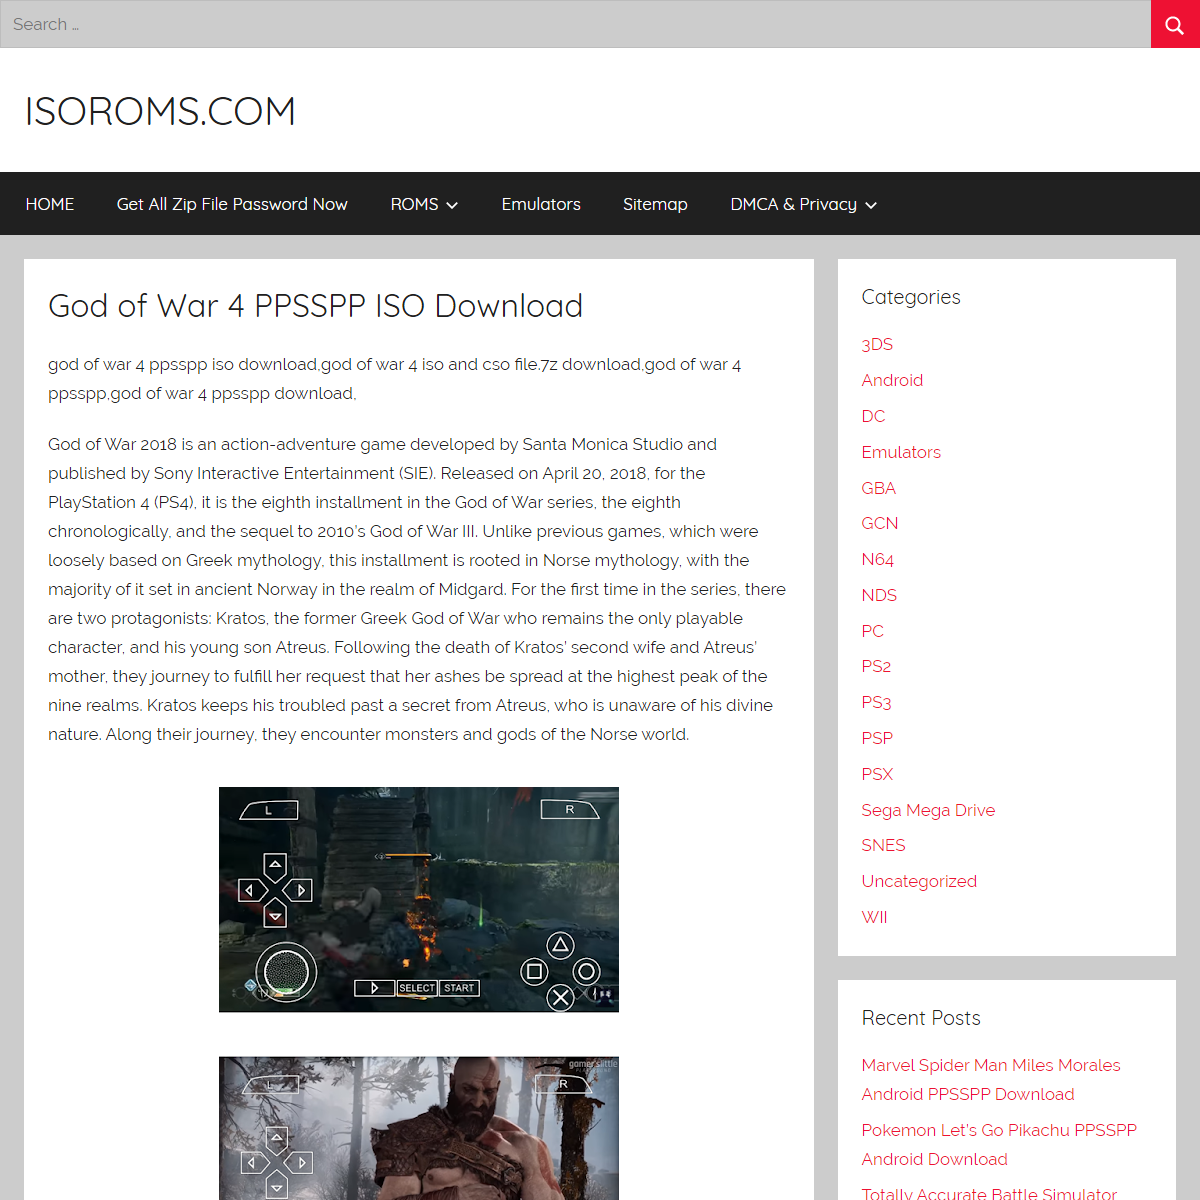 God of War 4 PPSSPP ISO Download â€“ ISOROMS.COM